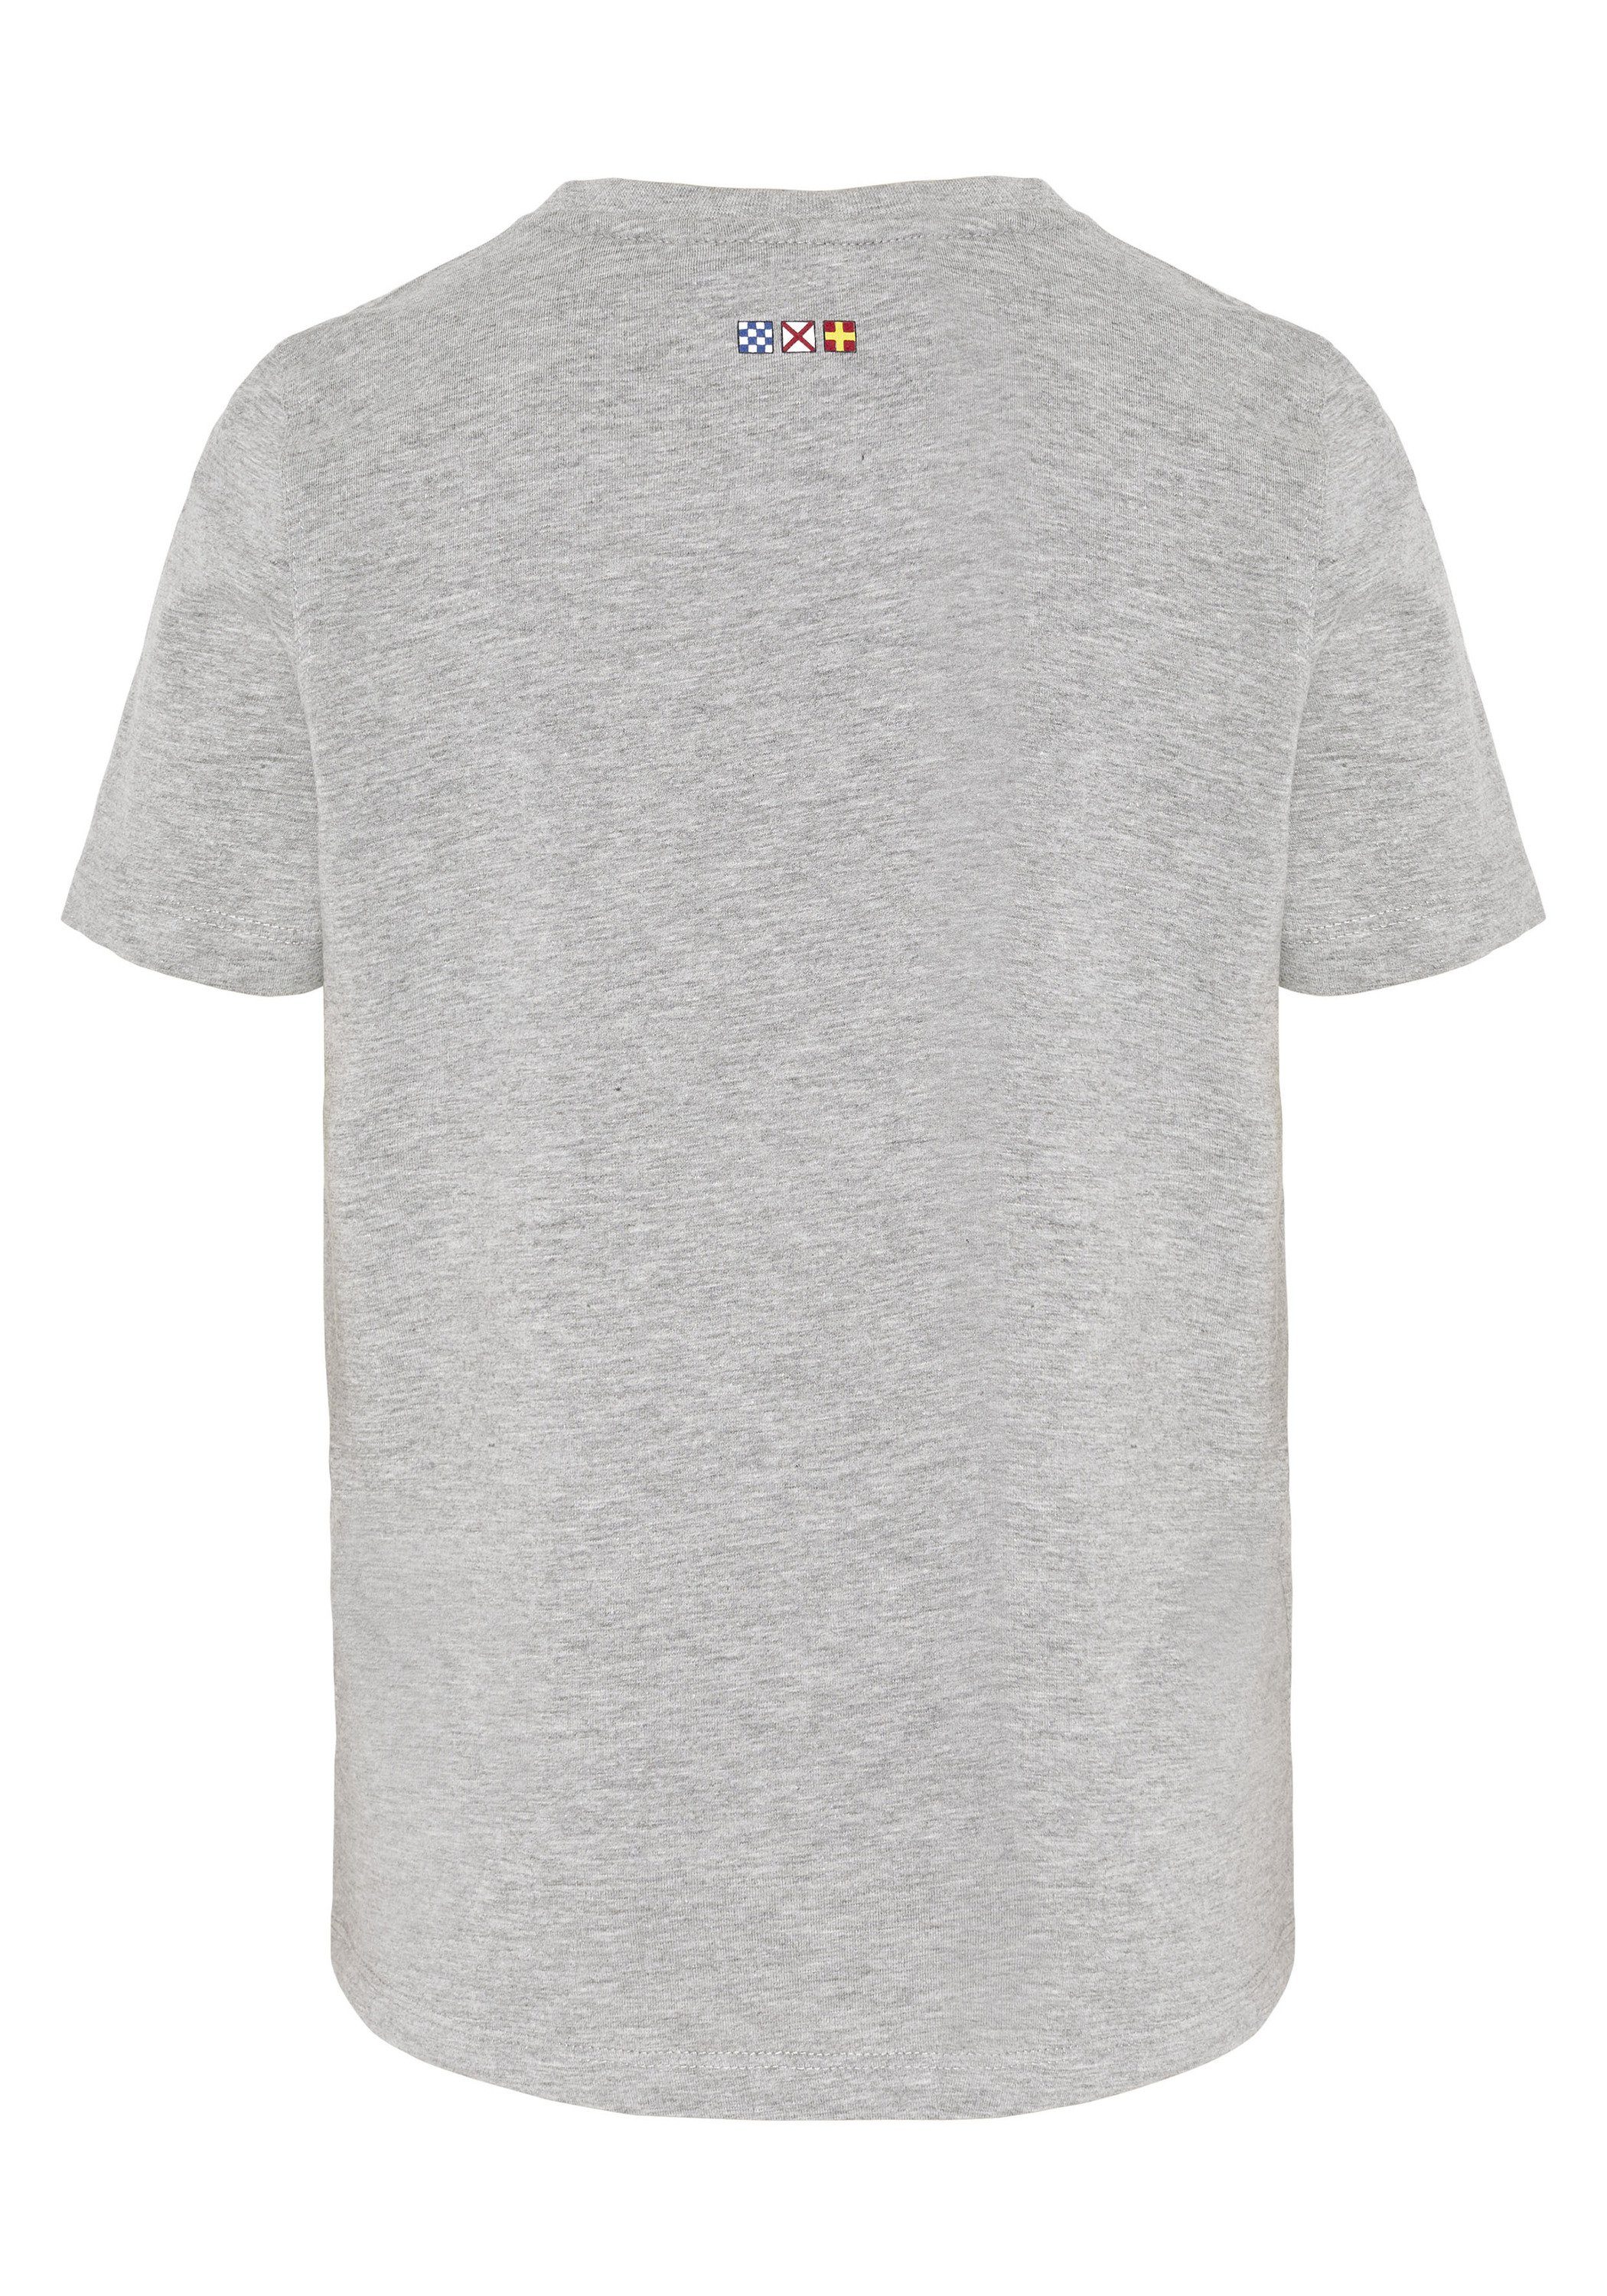 Herren Shirts NAVIGATOR Print-Shirt Men T-Shirt aus weicher Sweatware, GOTS (1-tlg)